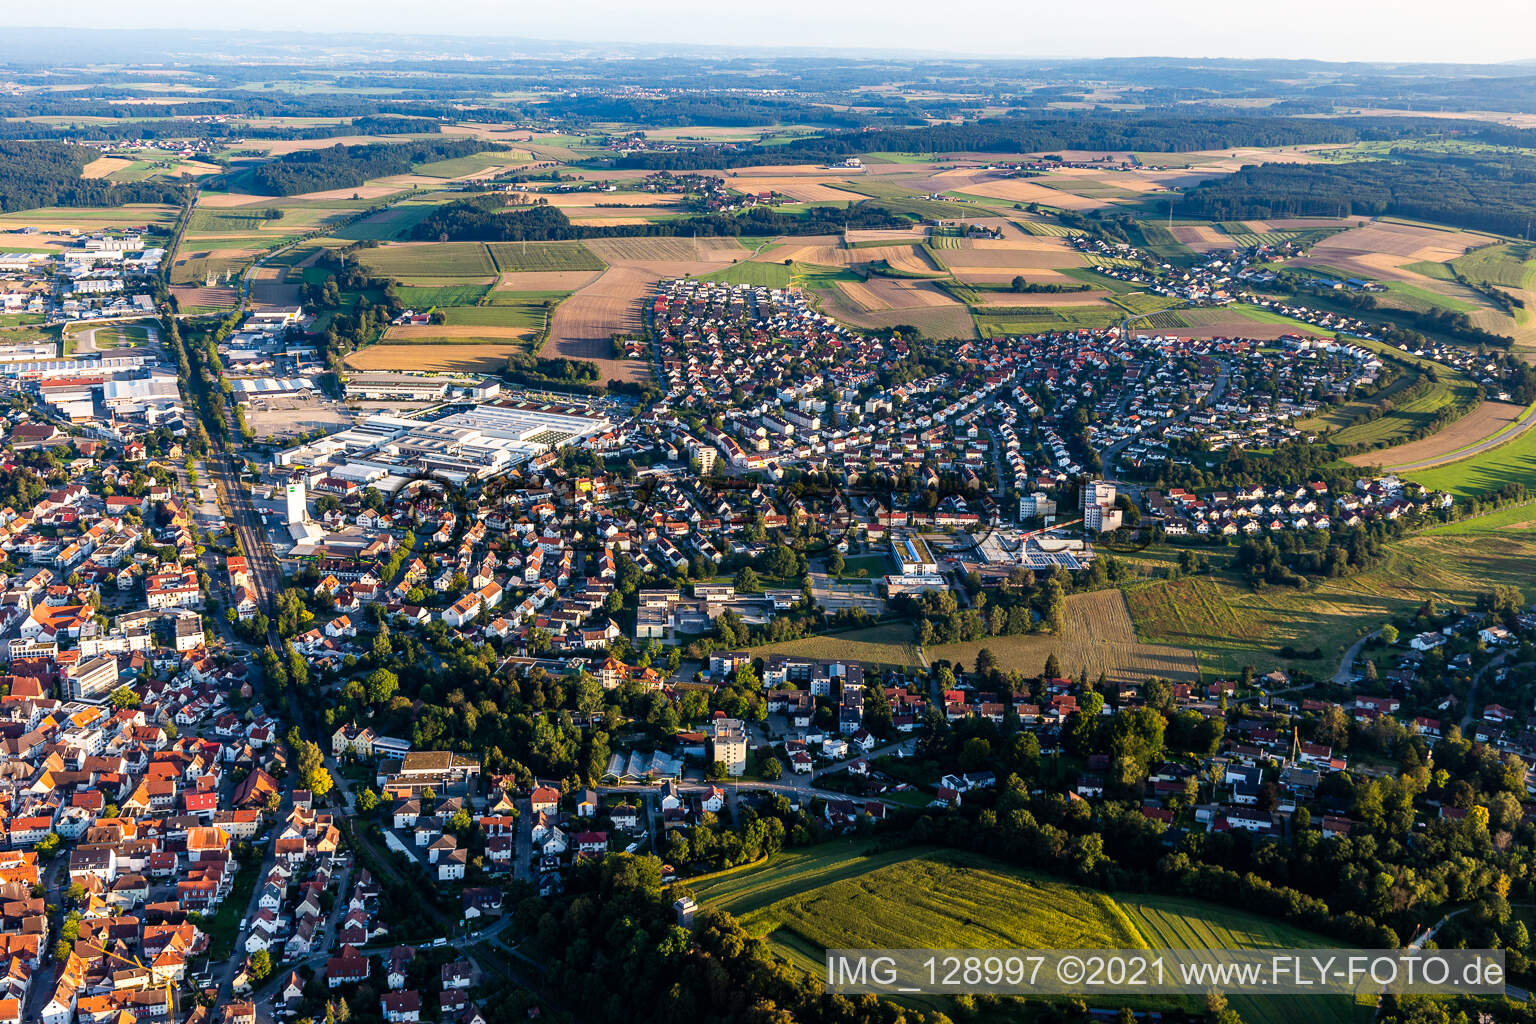 Stadtgebiet mit Außenbezirken und Innenstadtbereich am Rand von landwirtschaftlichen Feldern und Ackerflächen in Bad Saulgau im Bundesland Baden-Württemberg, Deutschland